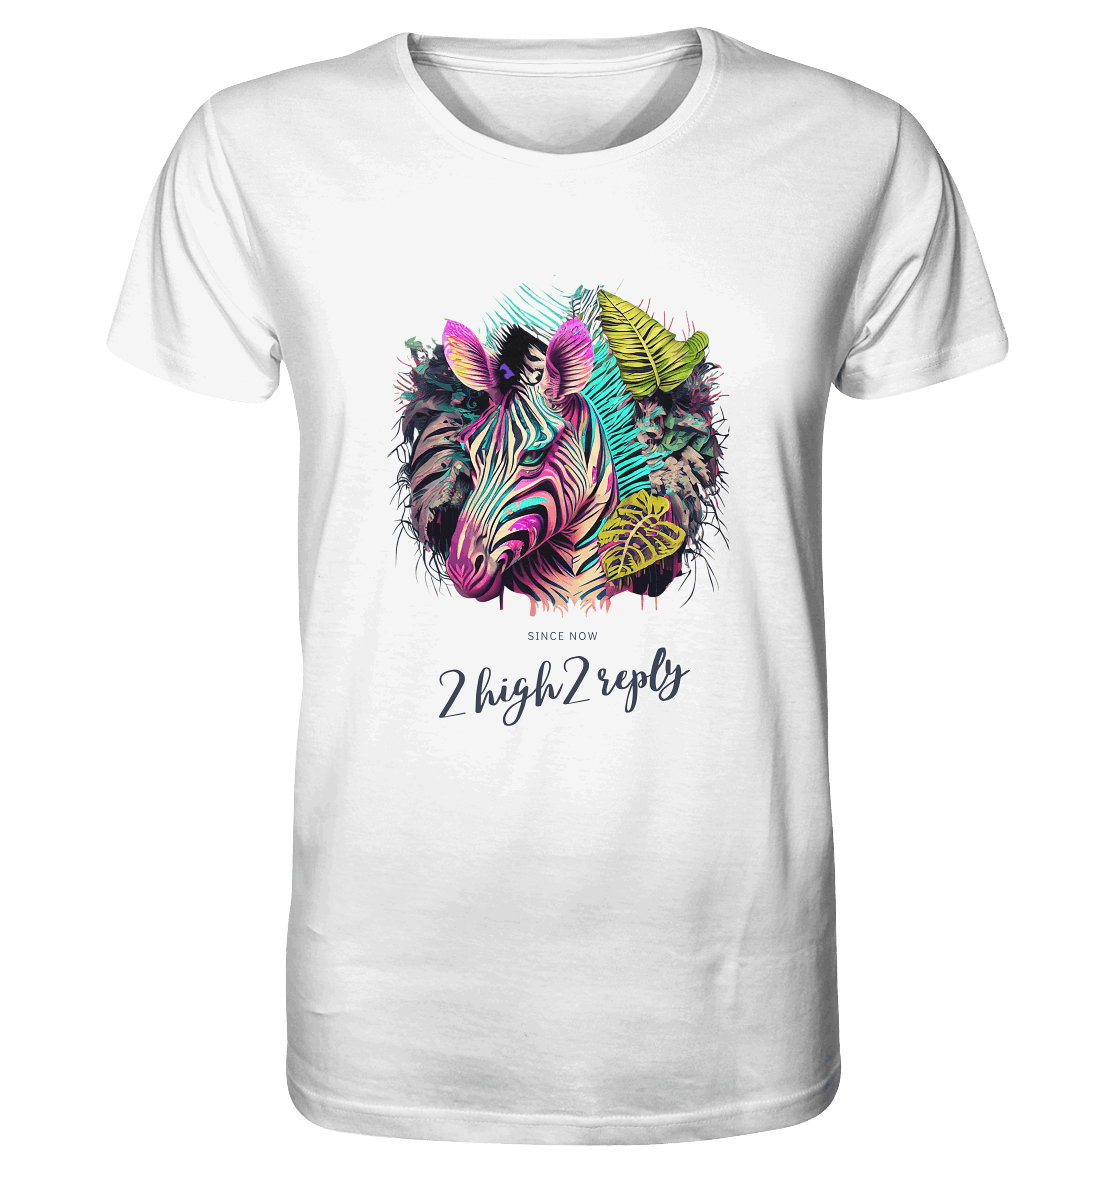 2high2reply / never trust a zebra  - Organic Shirt